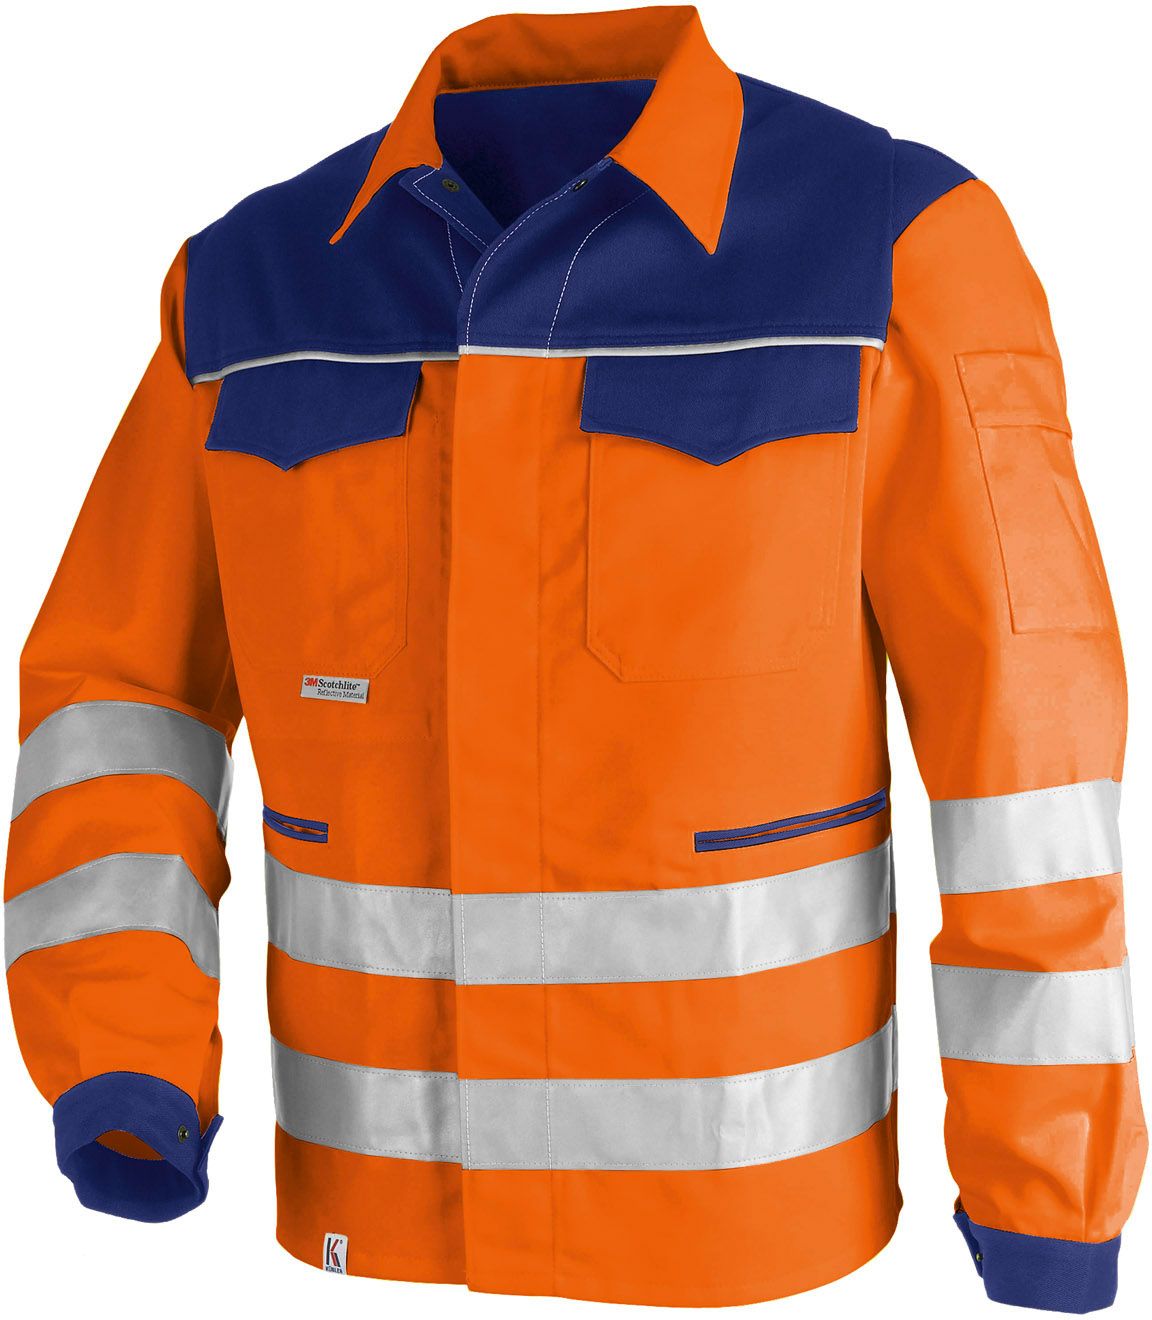 KÜBLER PSA High Vis Image Warnschutzjacke Arbeitsjacke Warnkleidung mit Reflexstreifen warnorange marine ca 270g